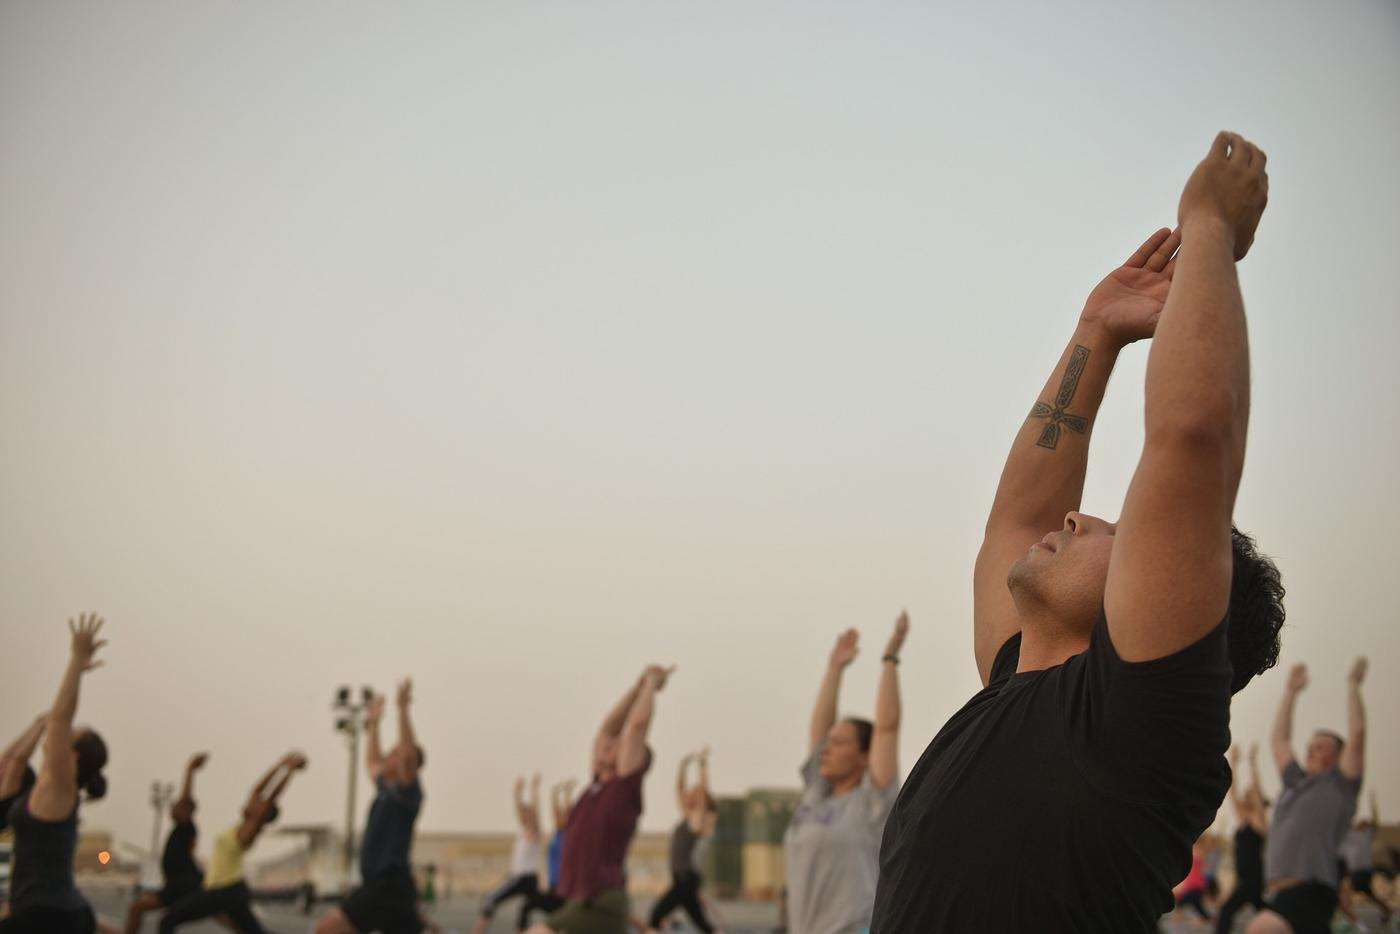 El 21 de junio ha sido declarado por la ONU como el Día Internacional del Yoga